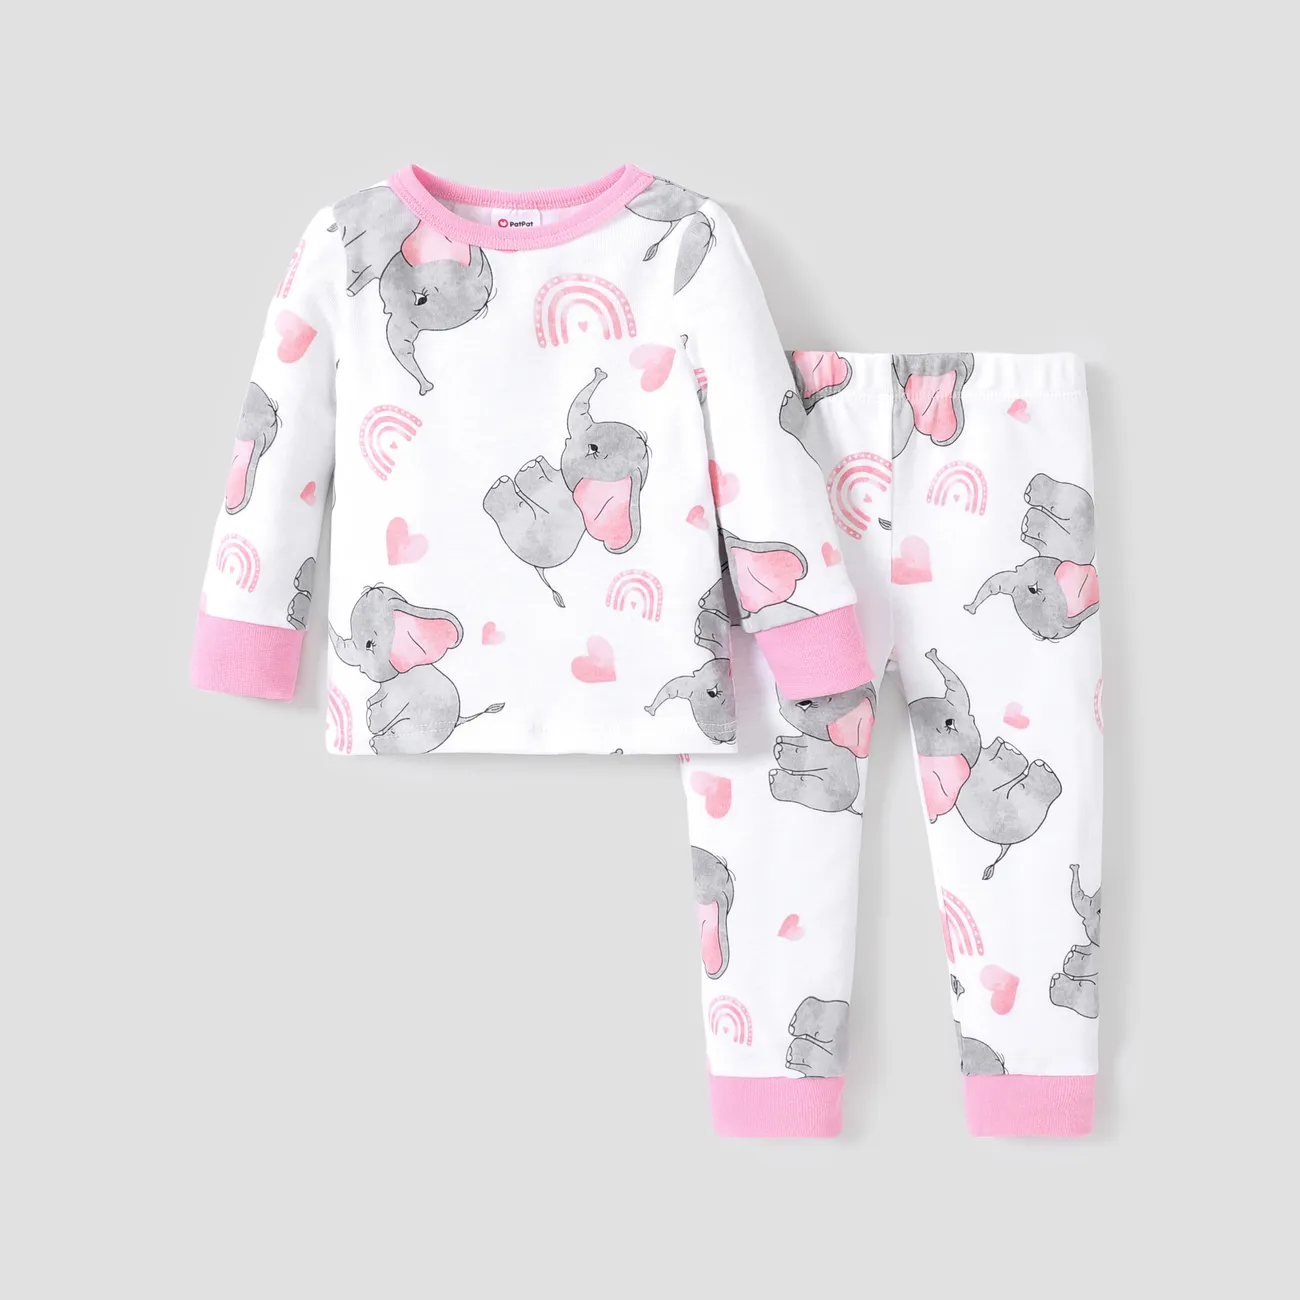 Baumwolle enge Unisex-Pyjamas 2-teiliges Set - Grundlegender Stil für Kinder rosa big image 1